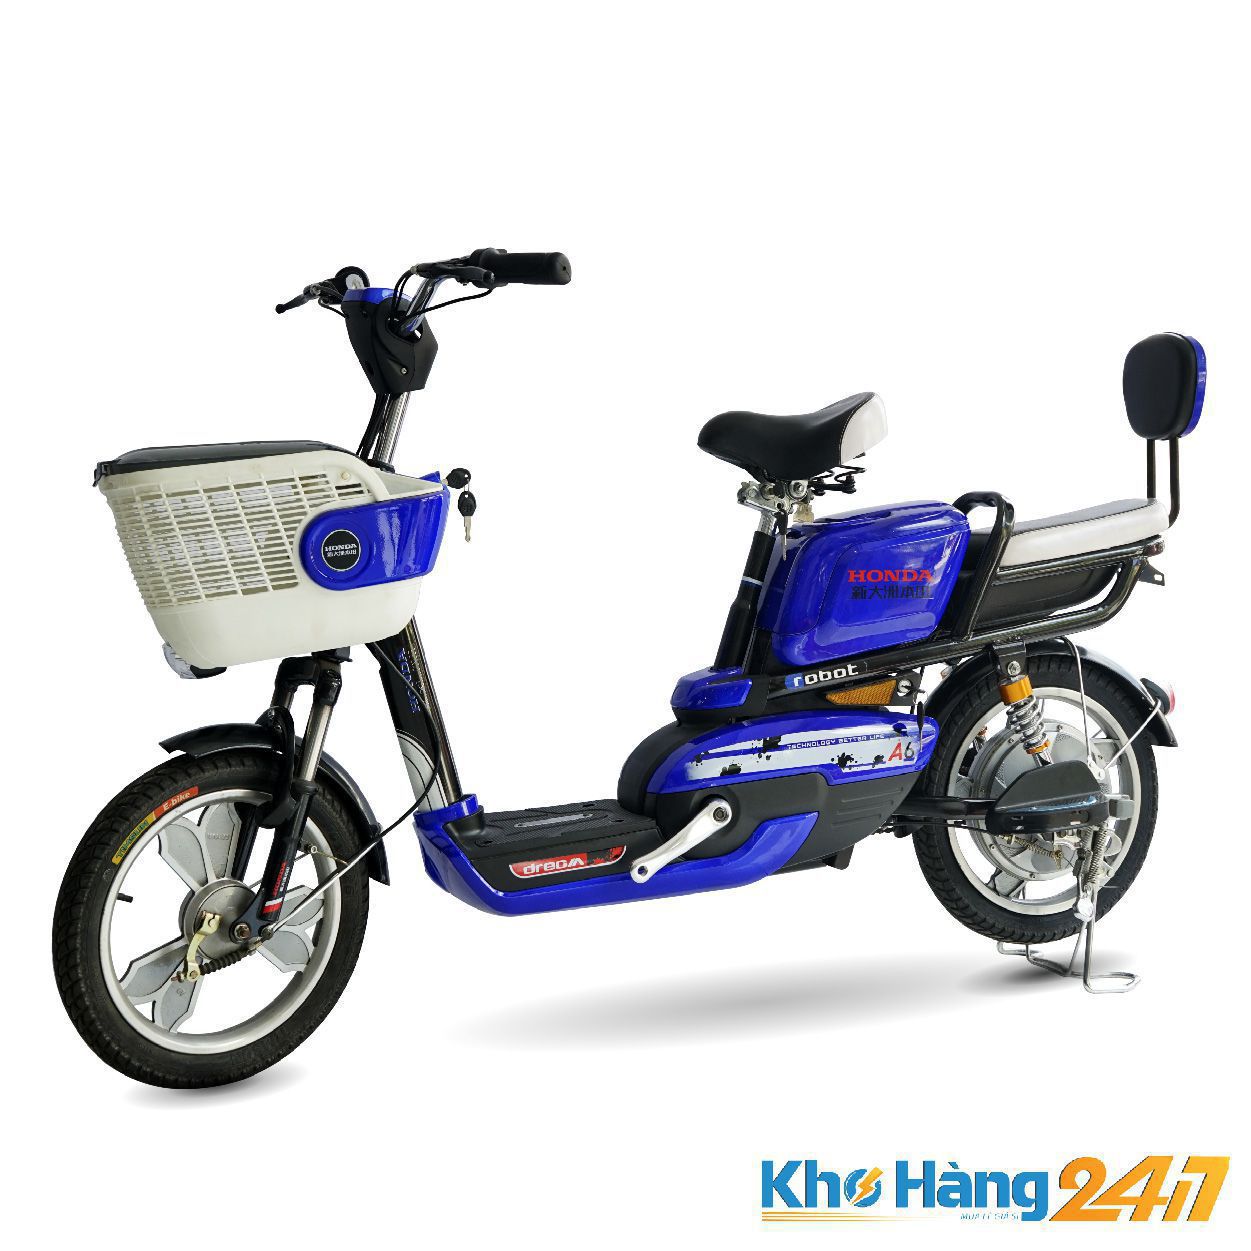 xe dap dien honda a6 thanh ly 1 - Mua xe đạp điện mới giá rẻ tại Khohang247.com